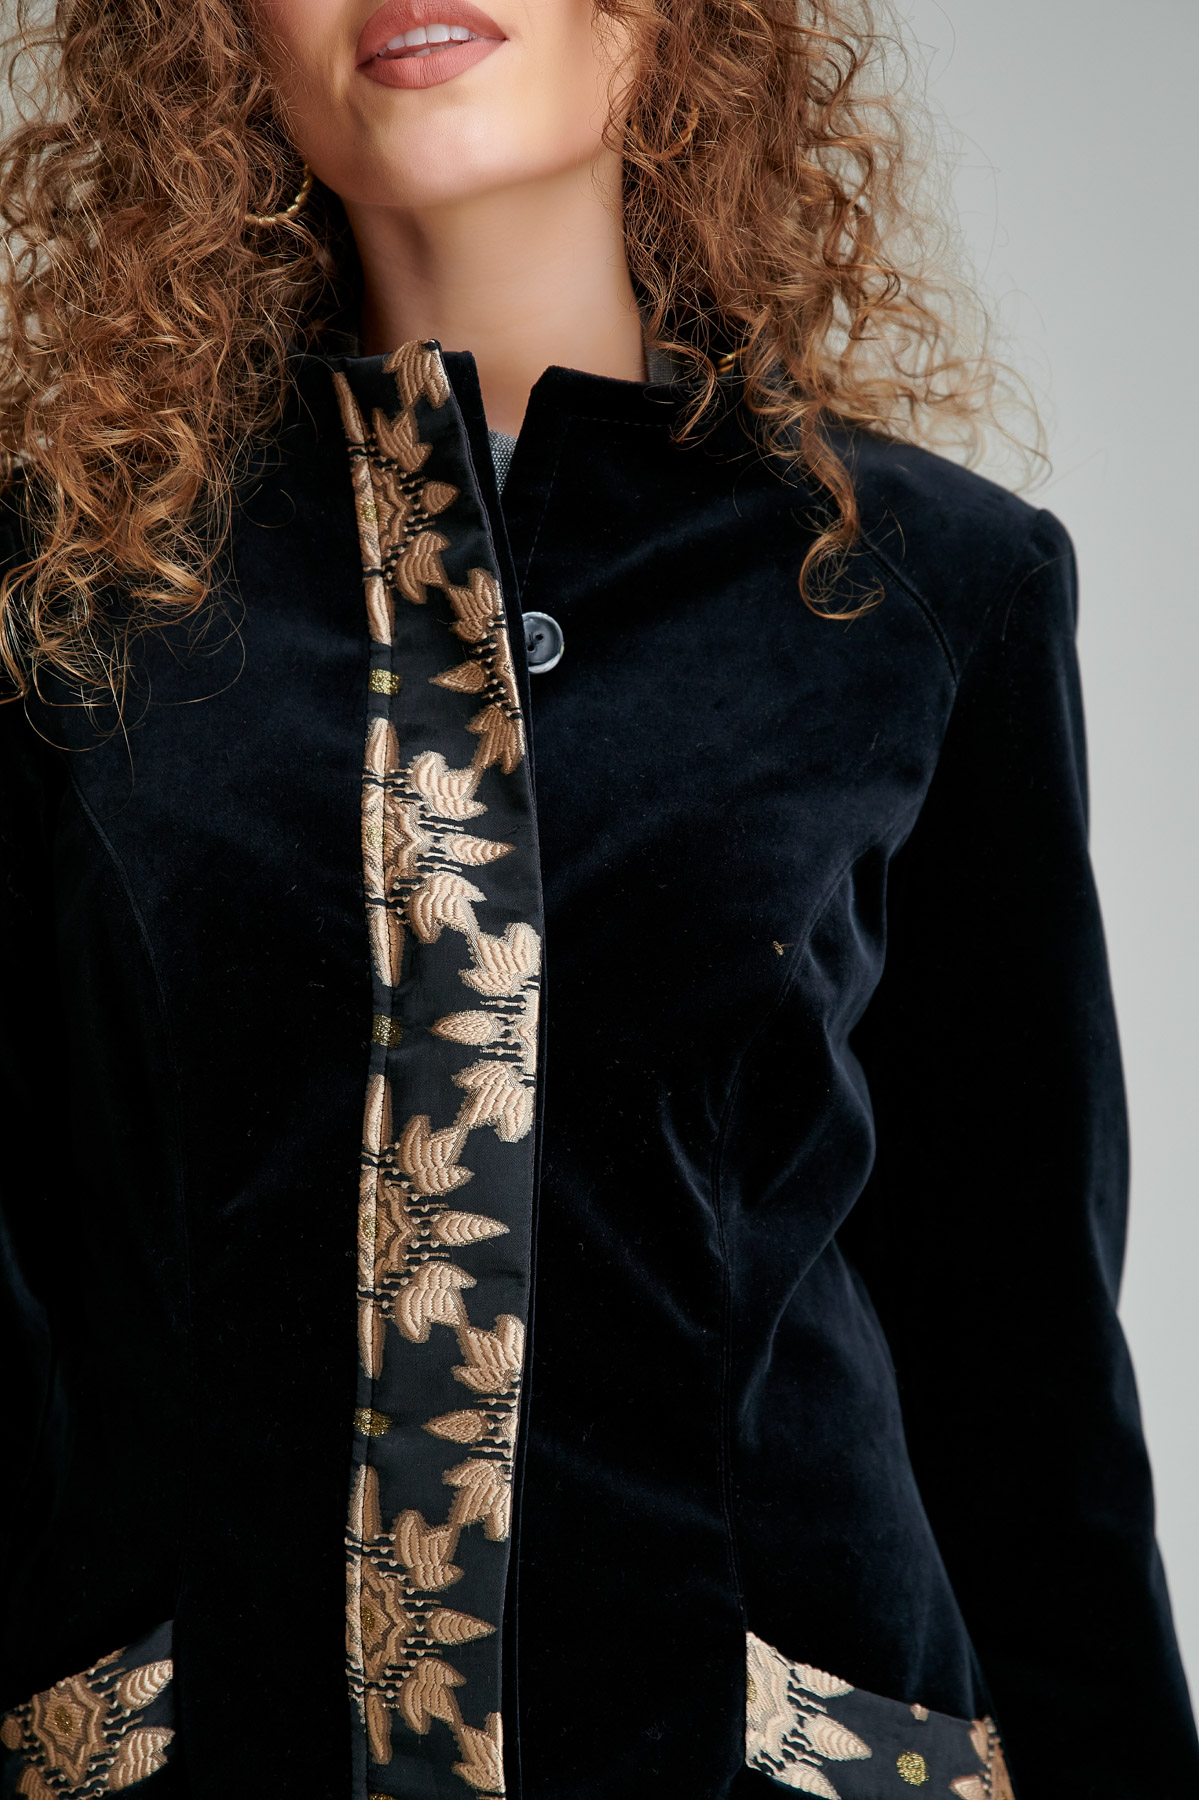 CELIN elegant black velvet overcoat. Natural fabrics, original design, handmade embroidery